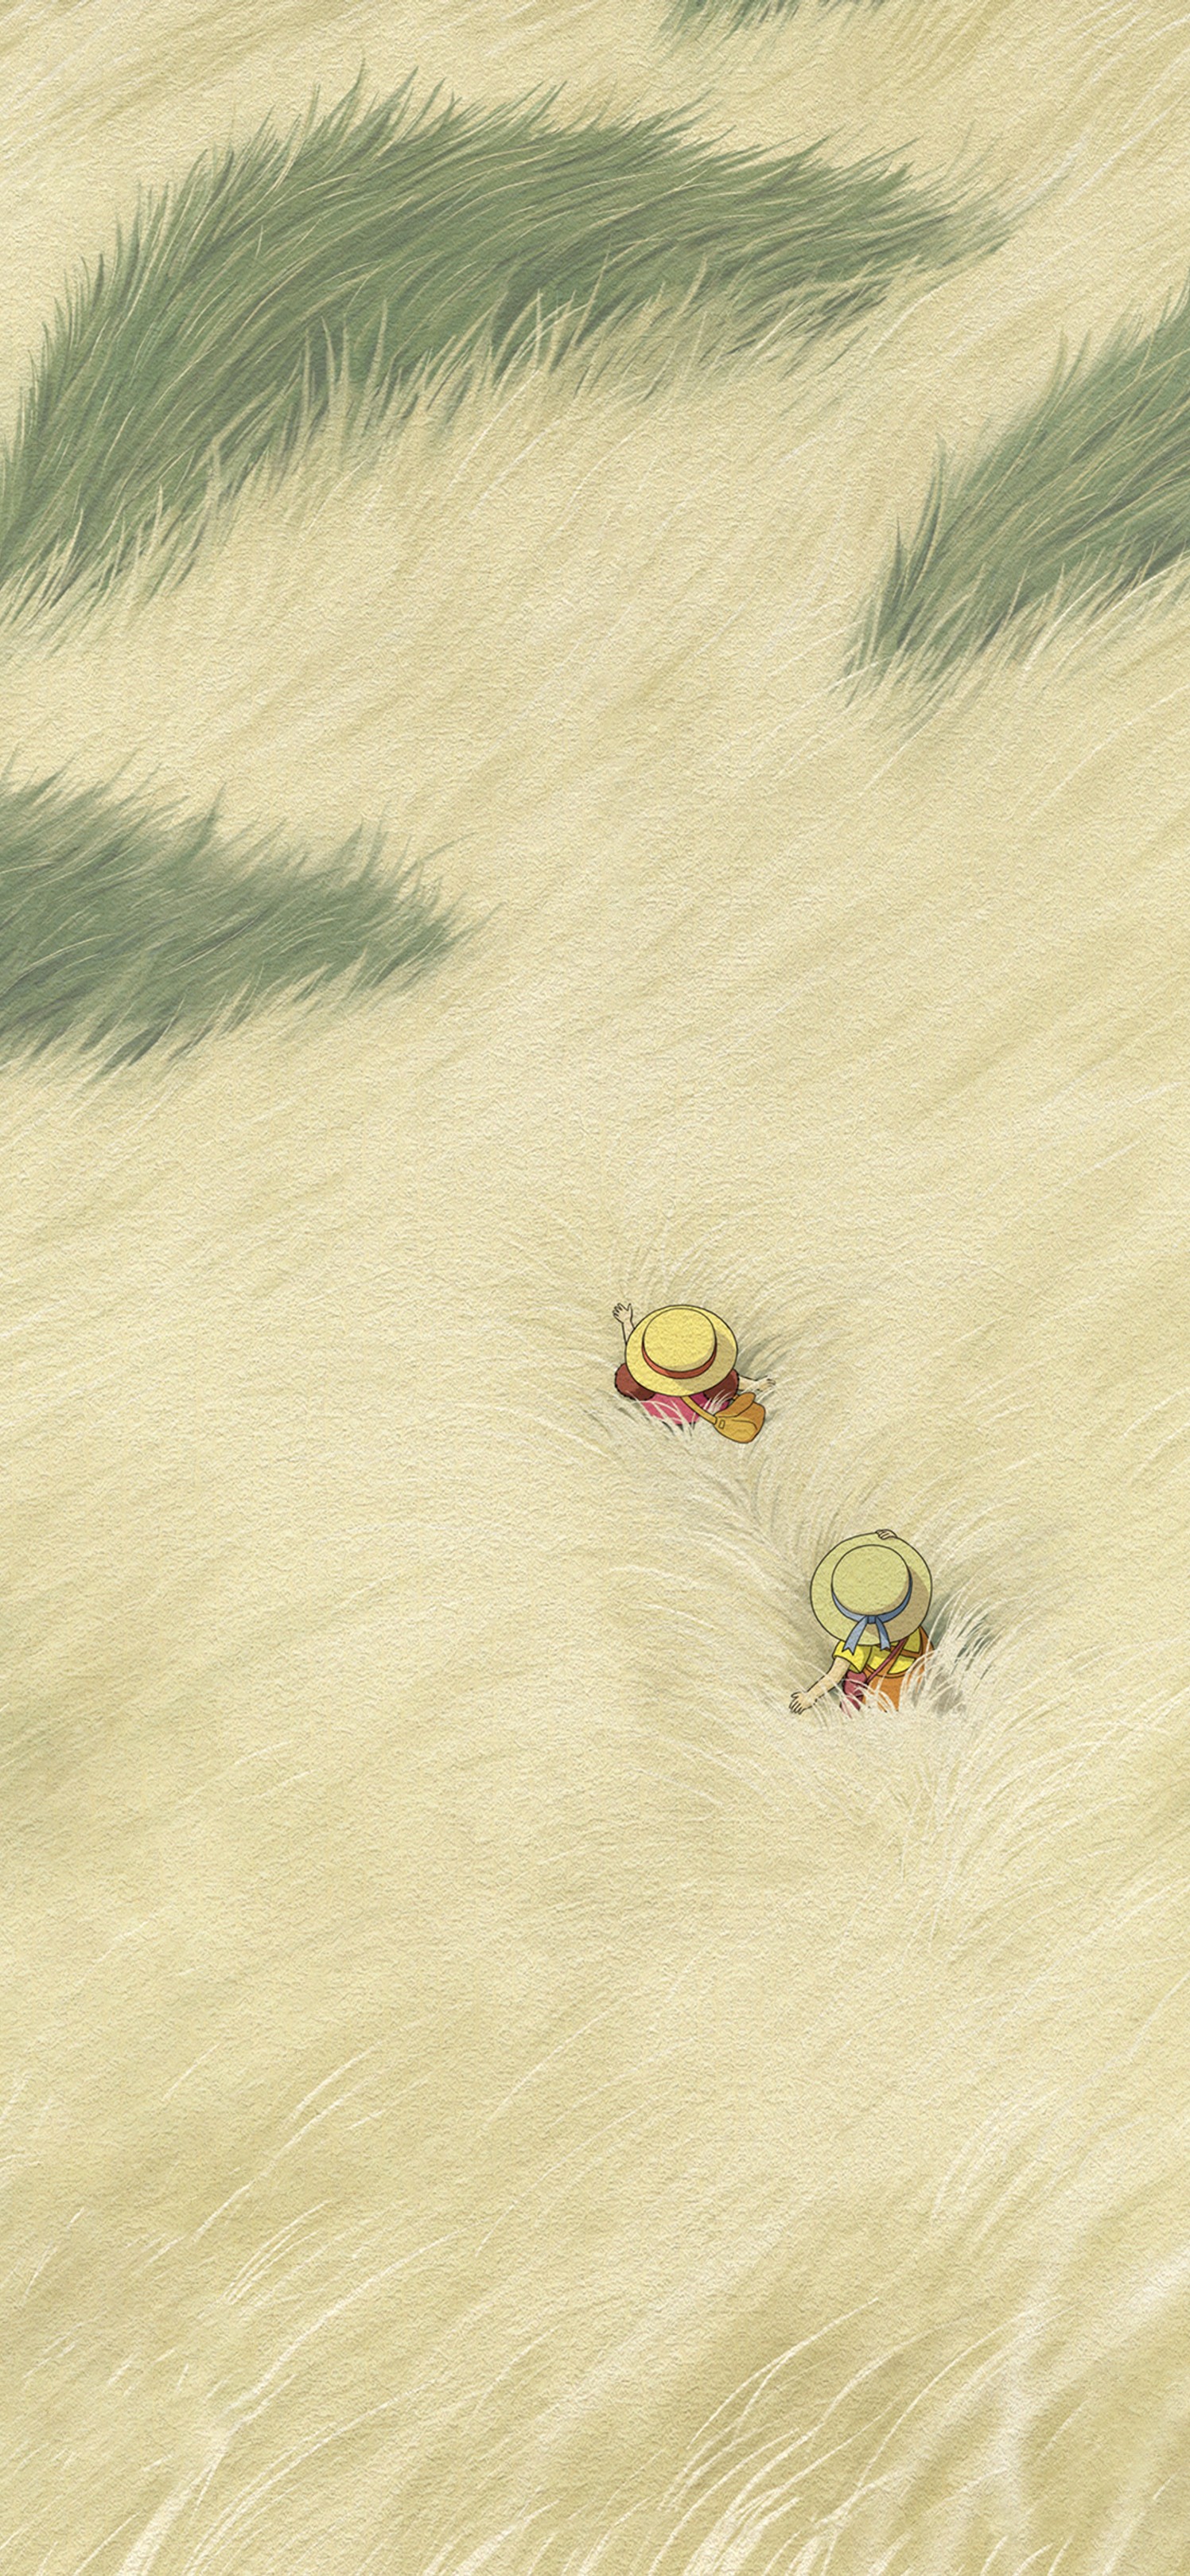 日本动漫大师宫崎骏笔下《龙猫》唯美场景手机壁纸套图